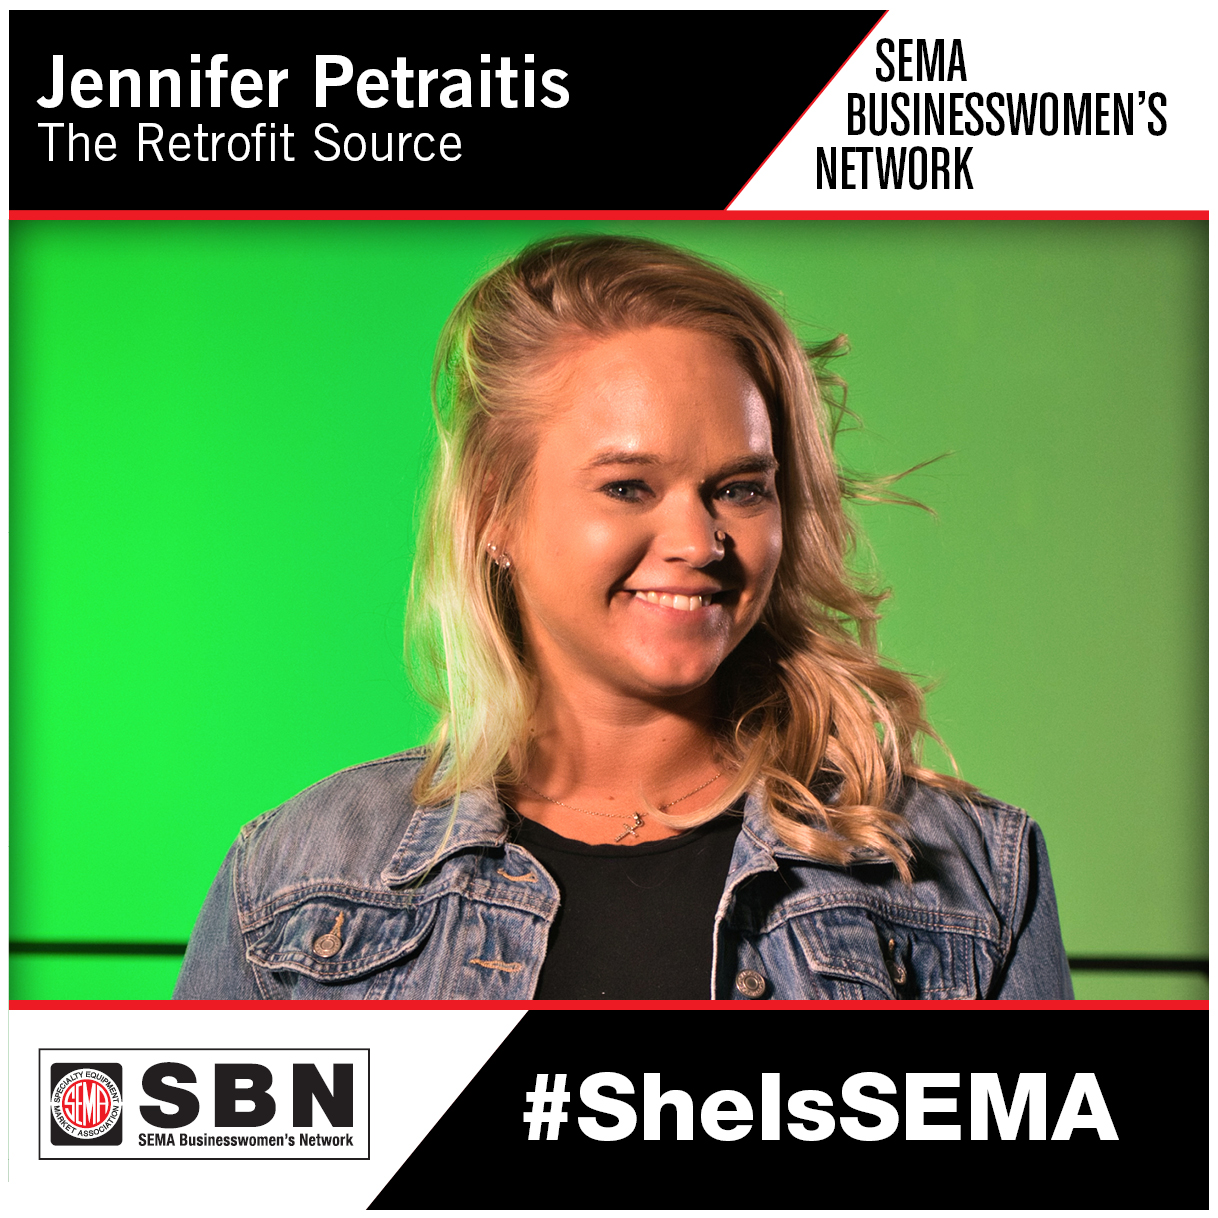 SBN Member Spotlight - Jennifer Petraitis